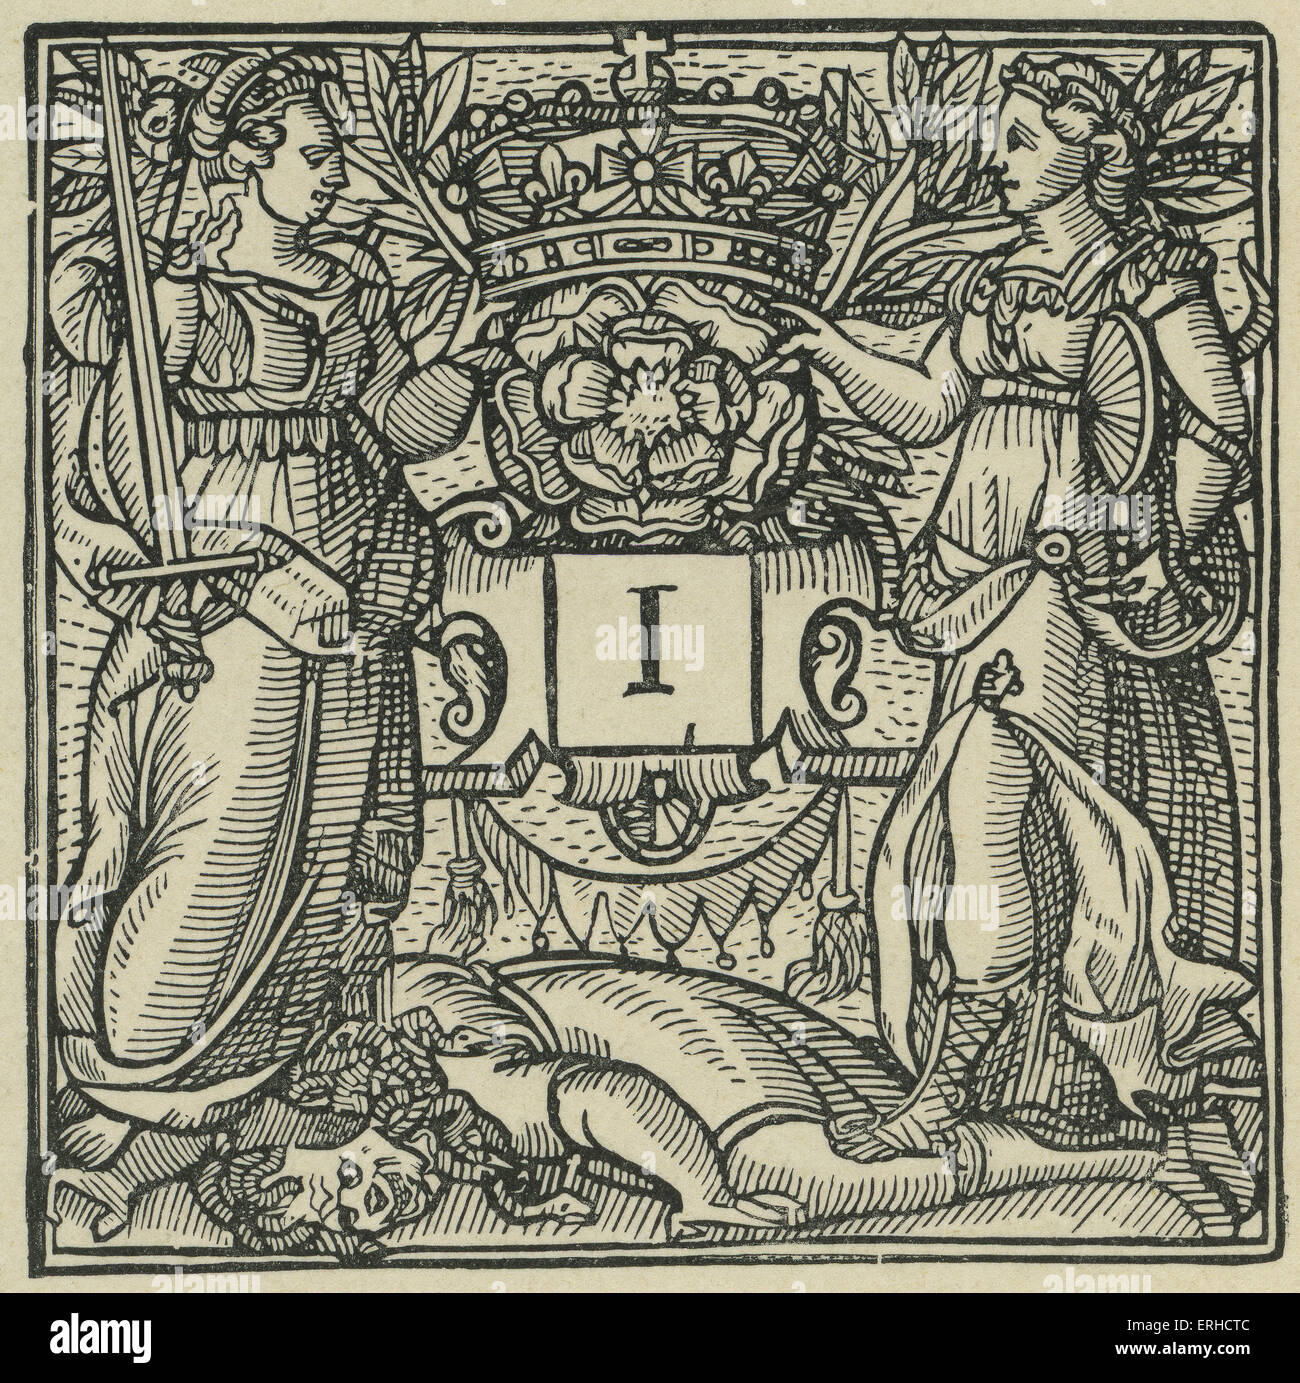 Ersten Sie Buchstaben "I" von Sidneys Arcadia, 1590. Zeigt zwei bewaffnete Frauen trampling eine Medusa-Figur mit Schlangen für die Haare. Anfängliche Stockfoto